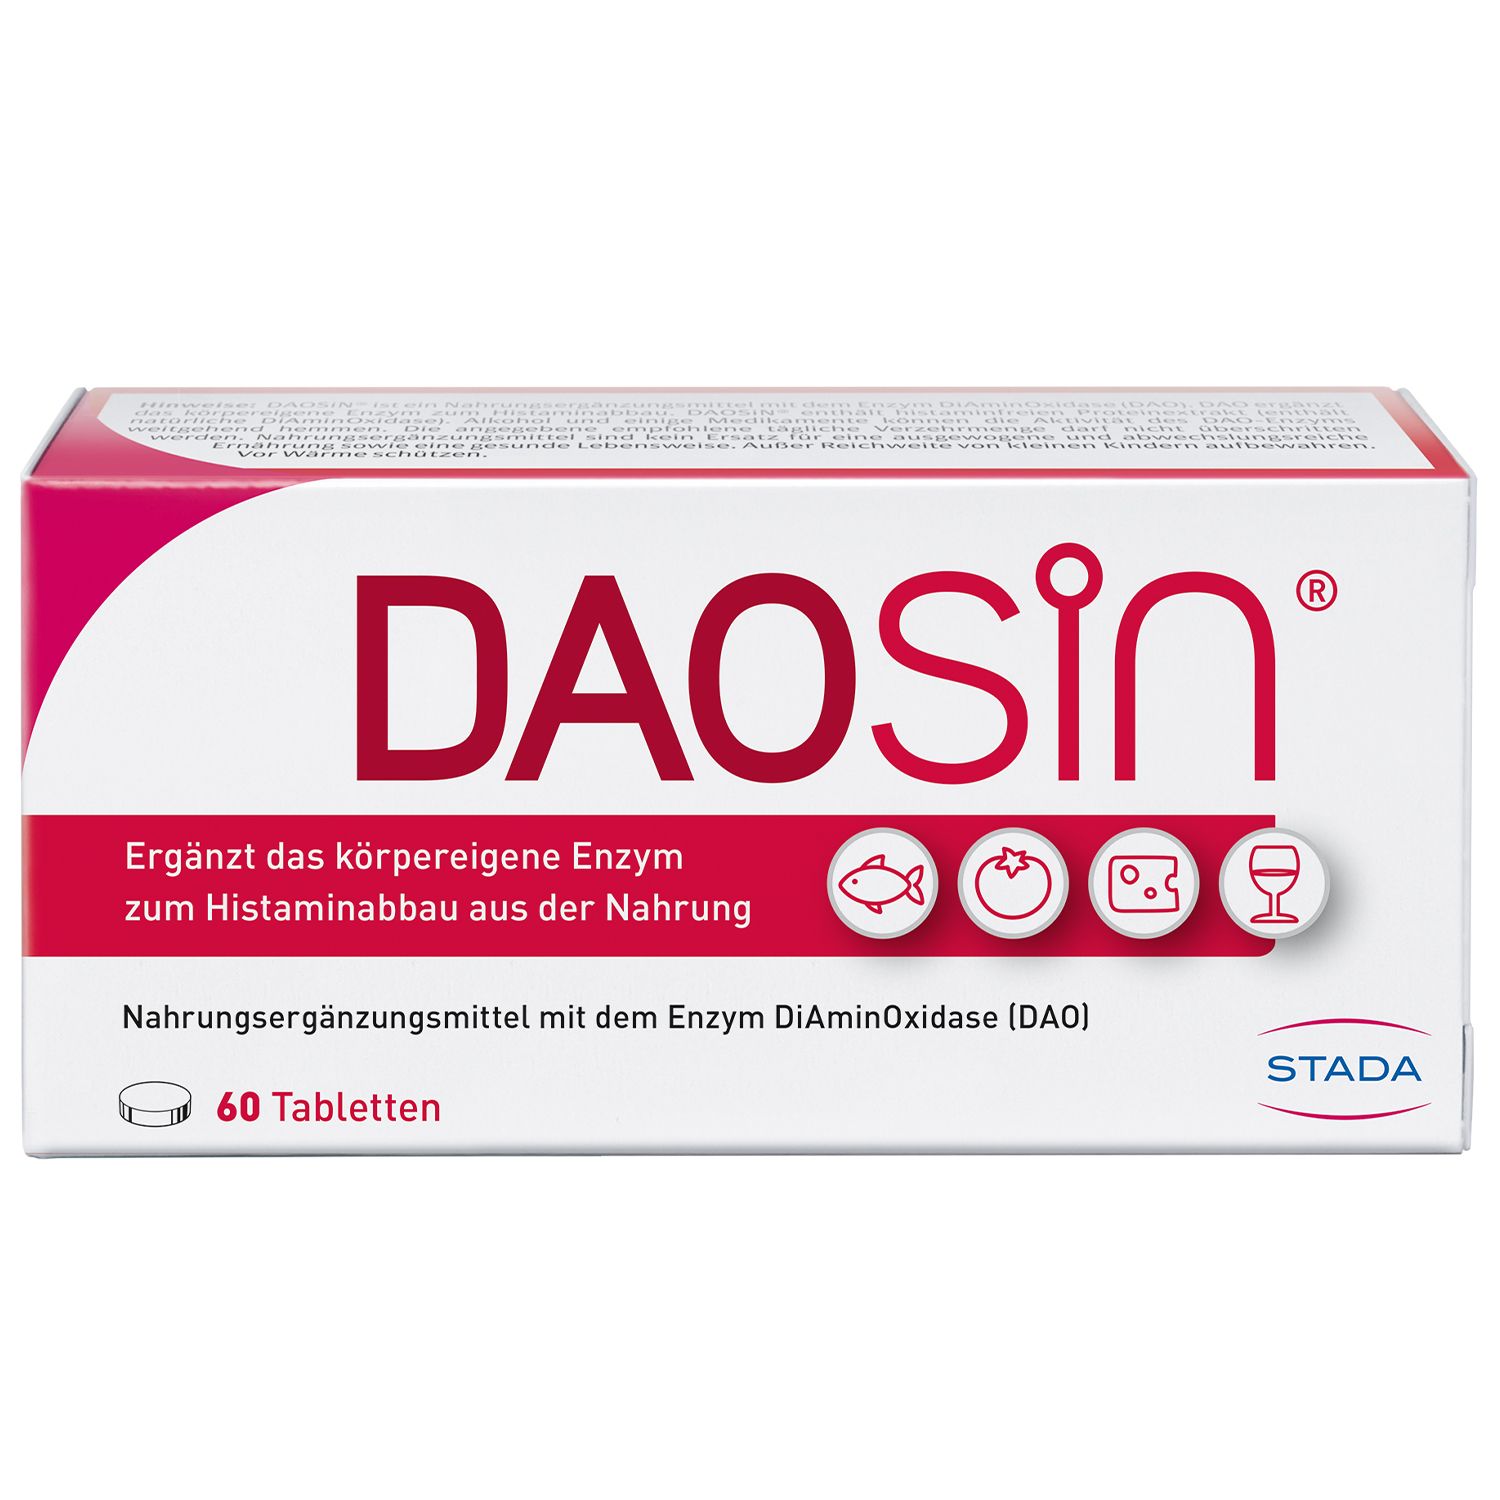 DAOSiN® Tabletten zur Ergänzung des körpereigenen DAO-Enzyms zum Histaminabbau aus der Nahrung